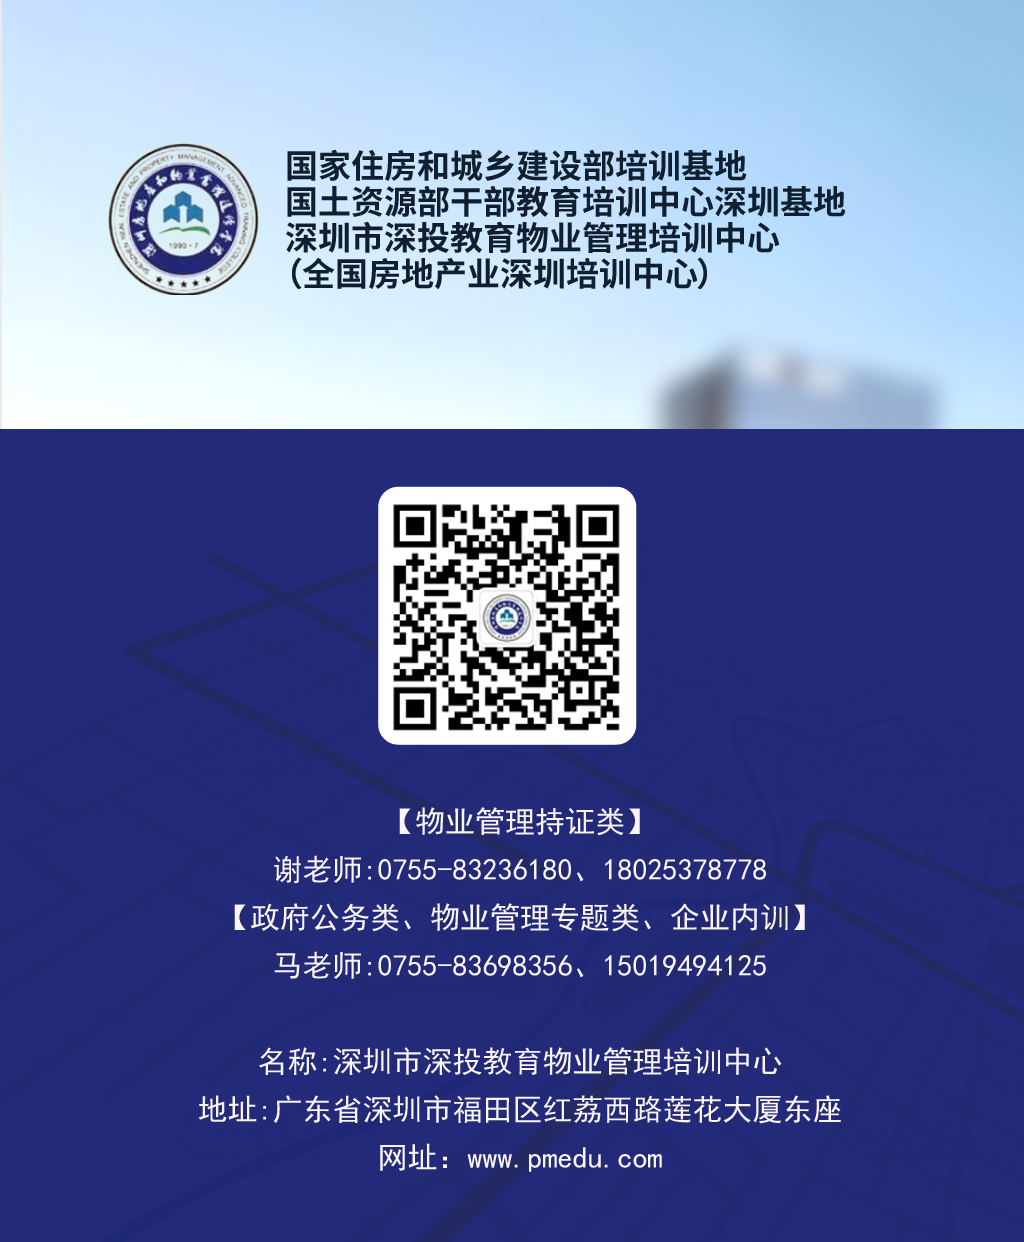 公众号-深圳市深投教育物业管理培训中心2.jpg